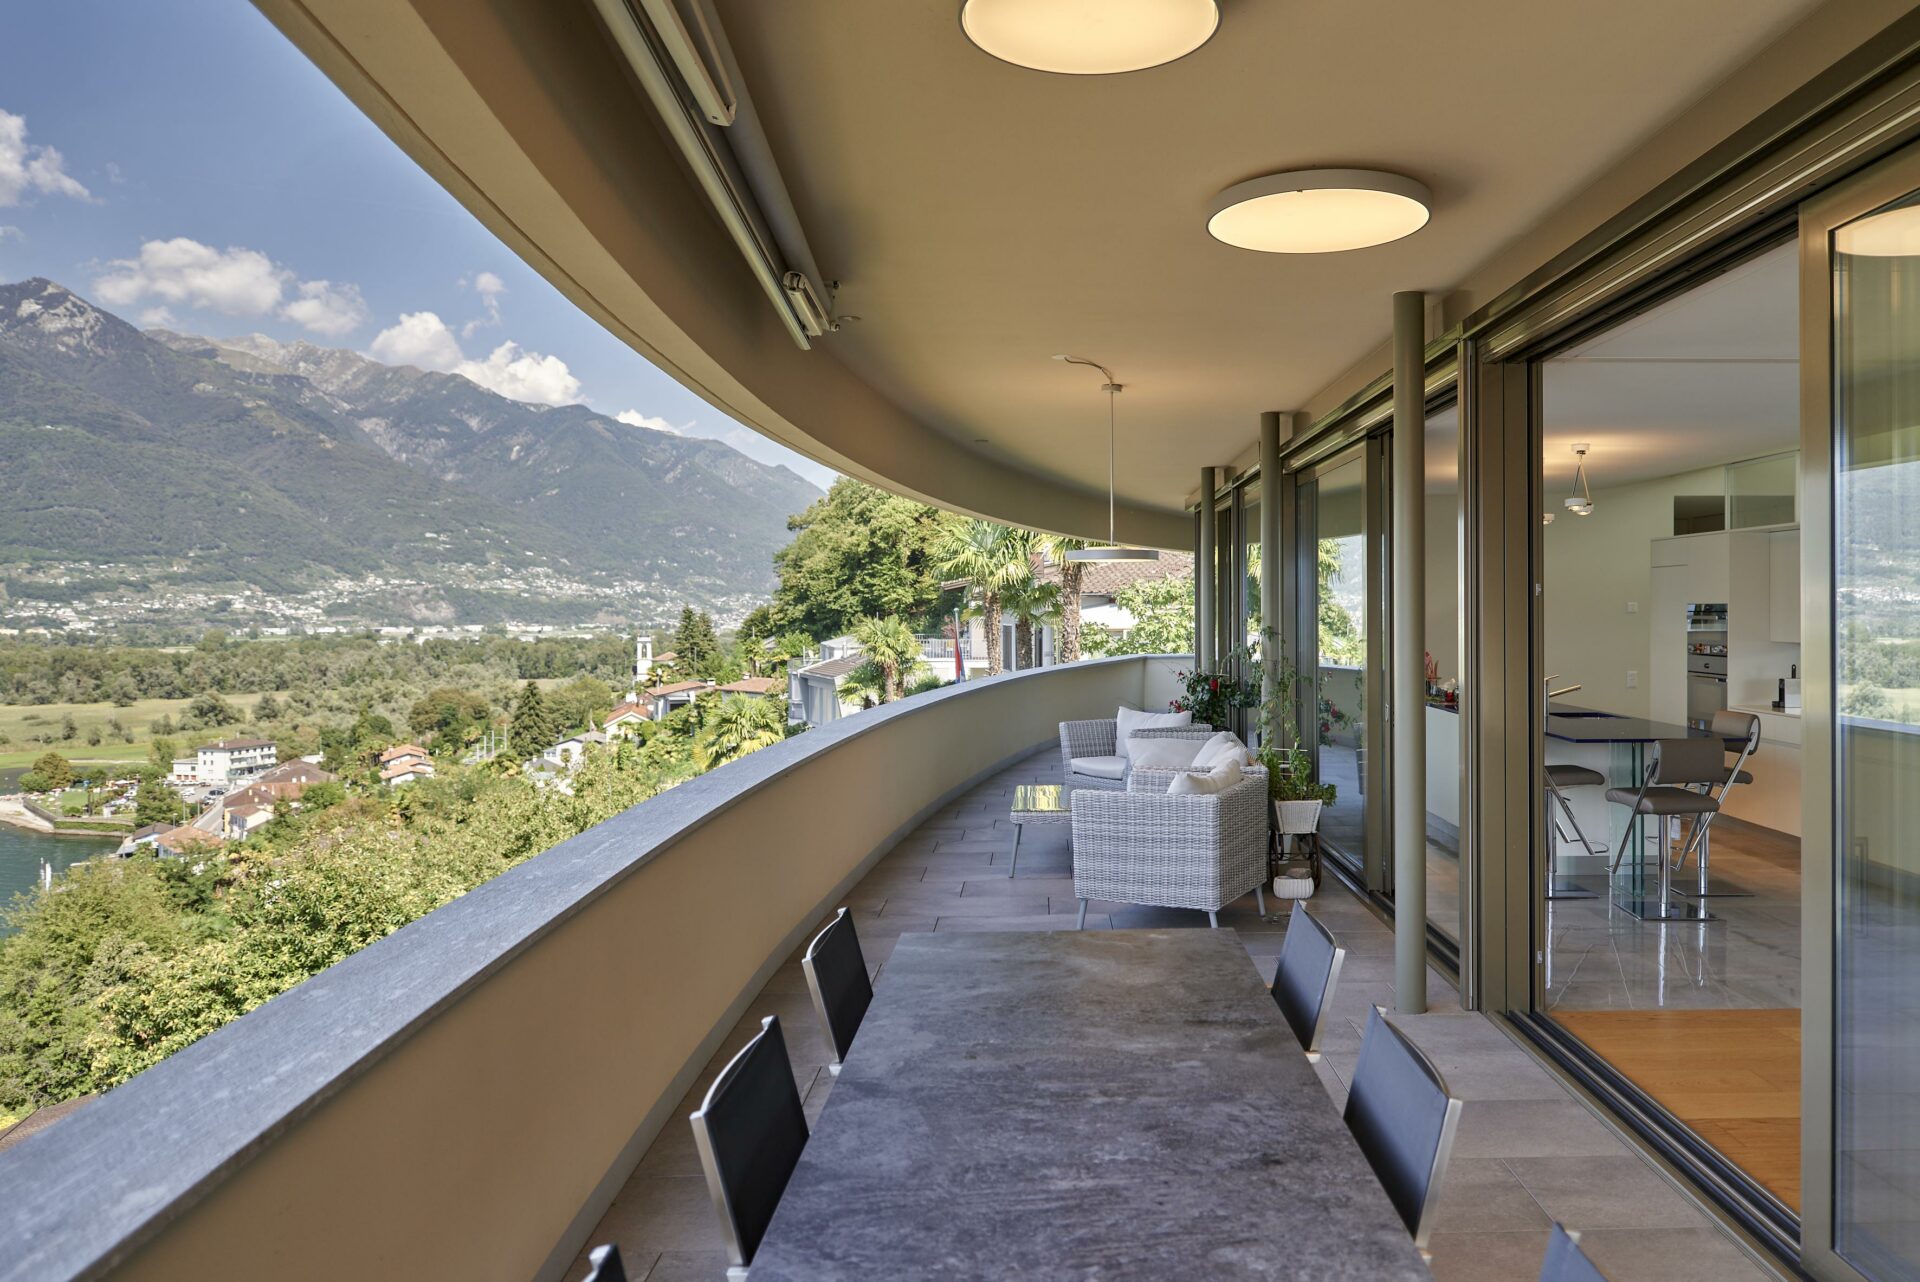 Spettacolare Villa nel Gambarogno, Forni & Gueli Studio di Architettura a Muralto in Ticino